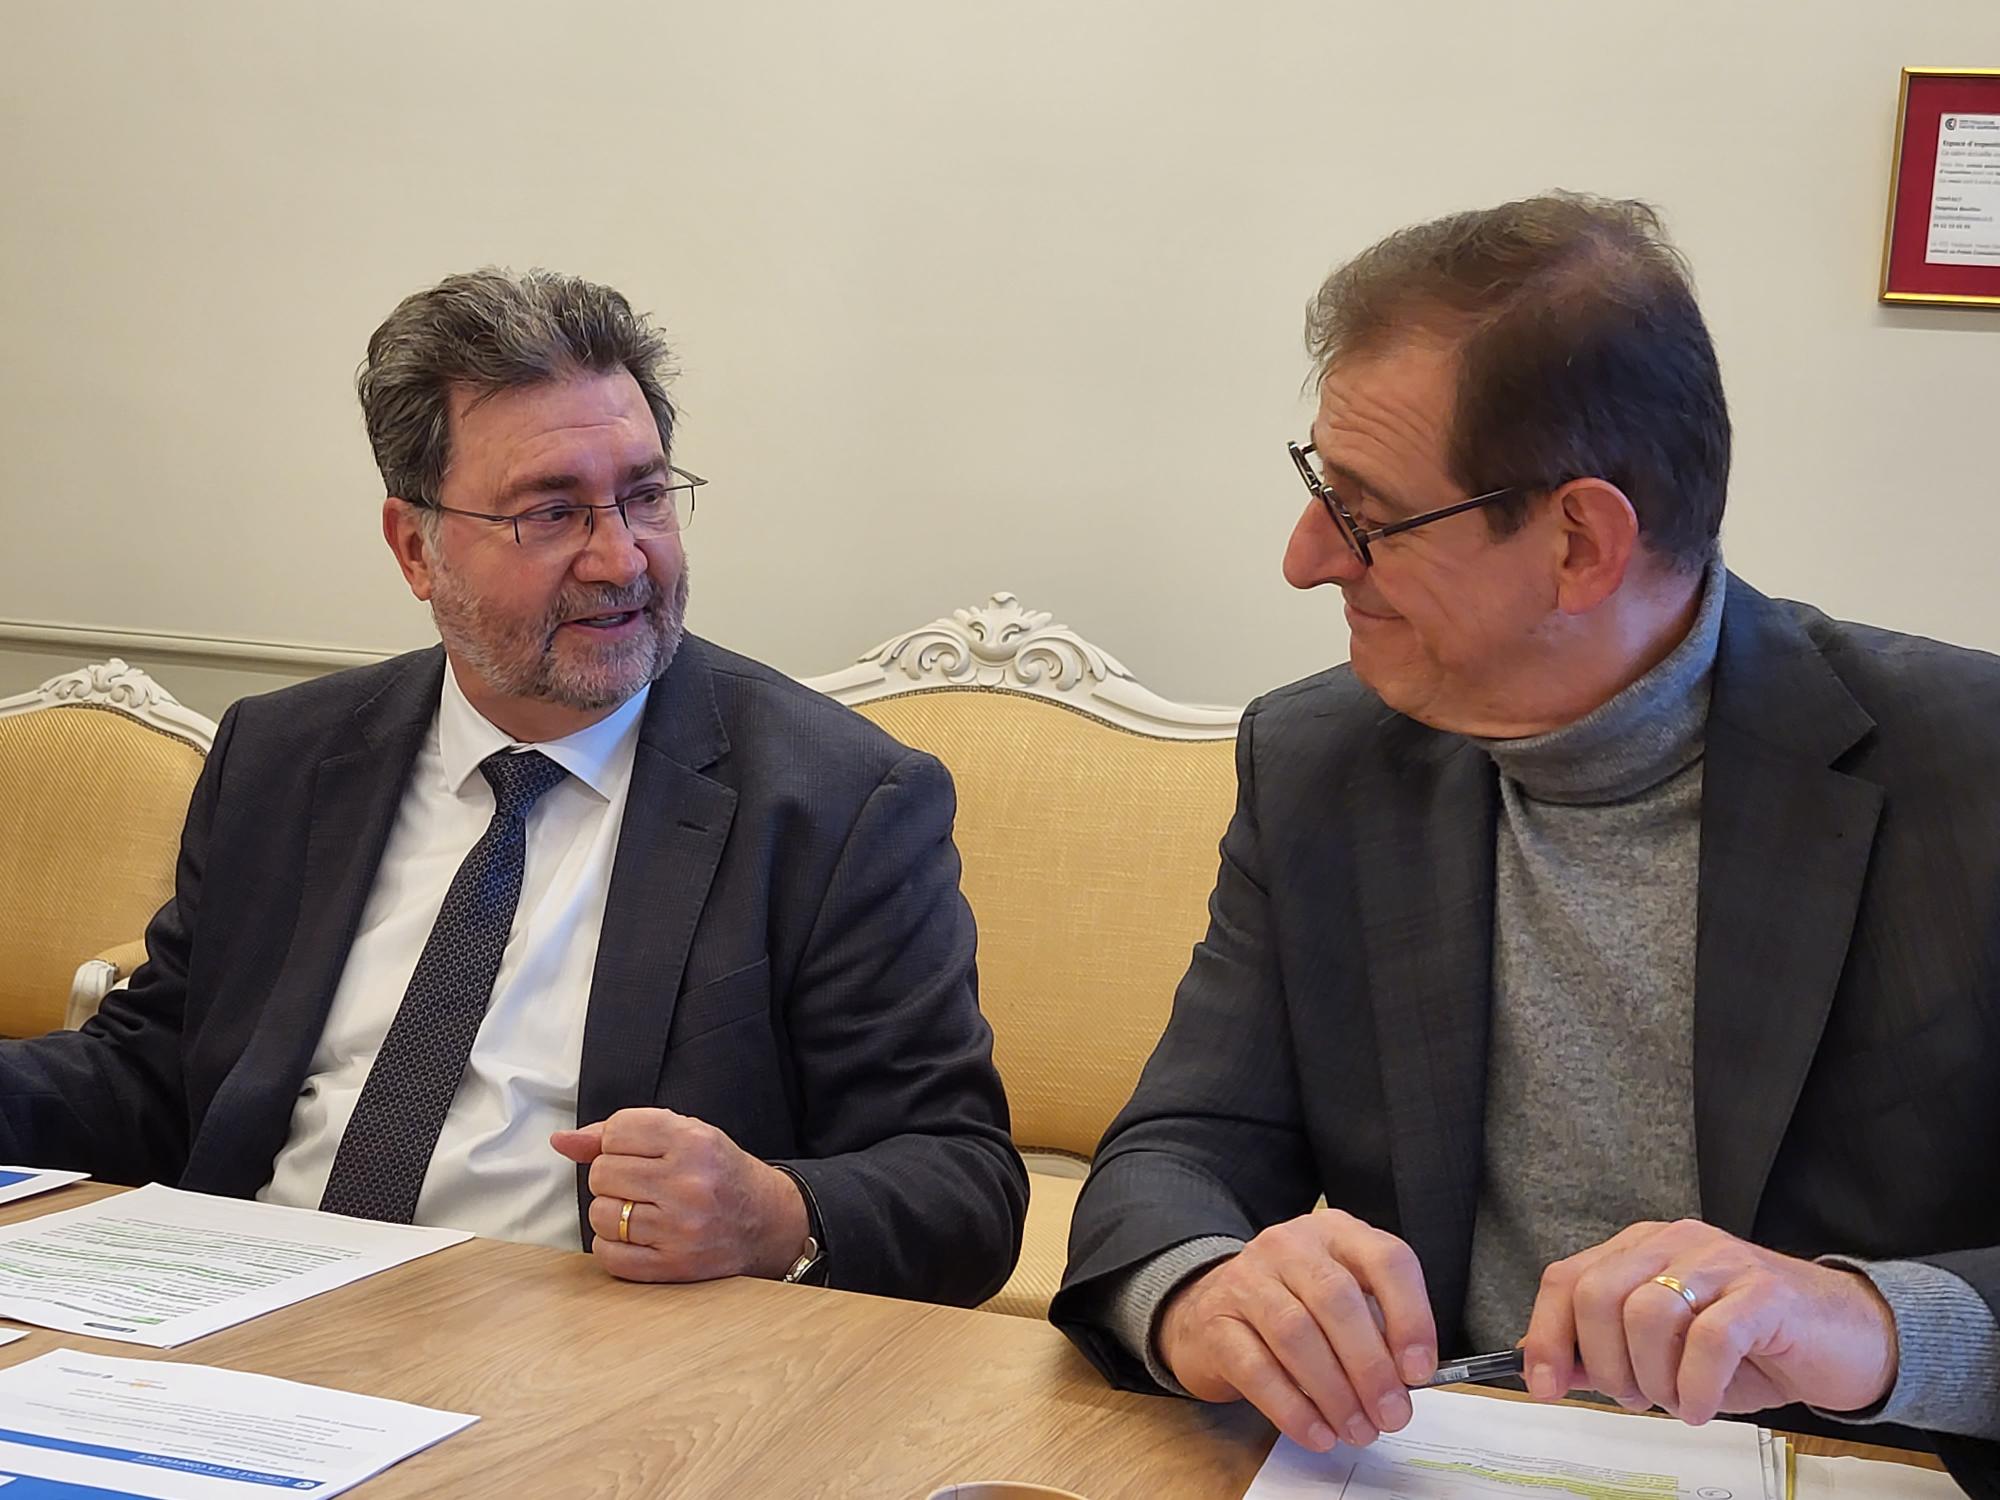 Patrick Piedrafita, le président de la CCI Toulouse Haute-Garonne (à gauche), et Stéphane Latouche, le directeur régional Occitanie de la Banque de France (à droite). (Photo : Anthony Assémat - Entreprises Occitanie)